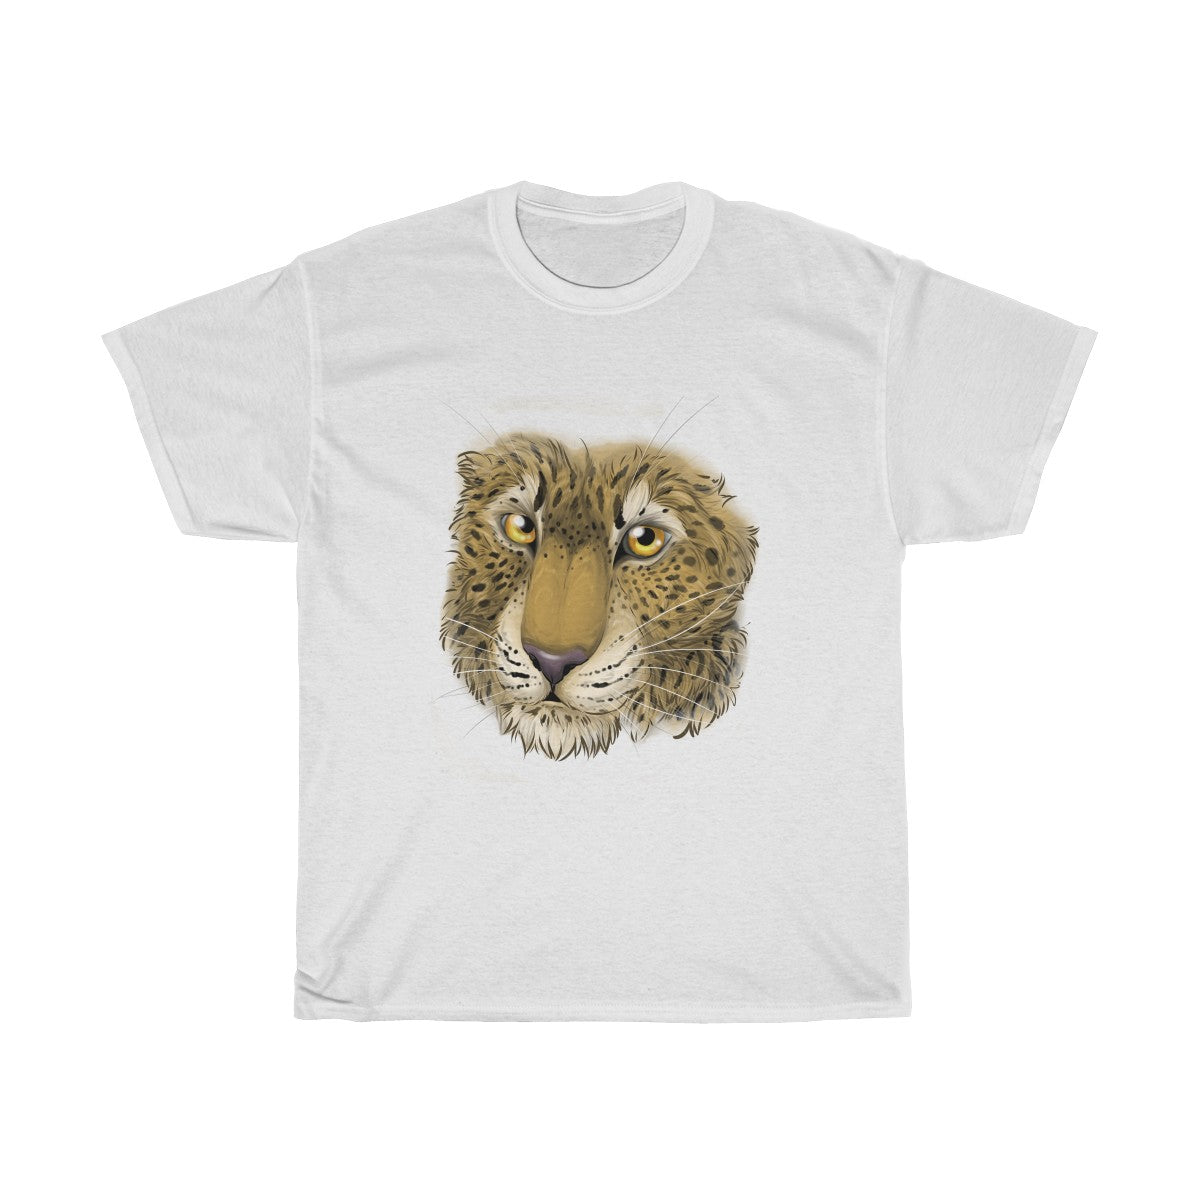 Leopard - T-Shirt T-Shirt Dire Creatures White S 